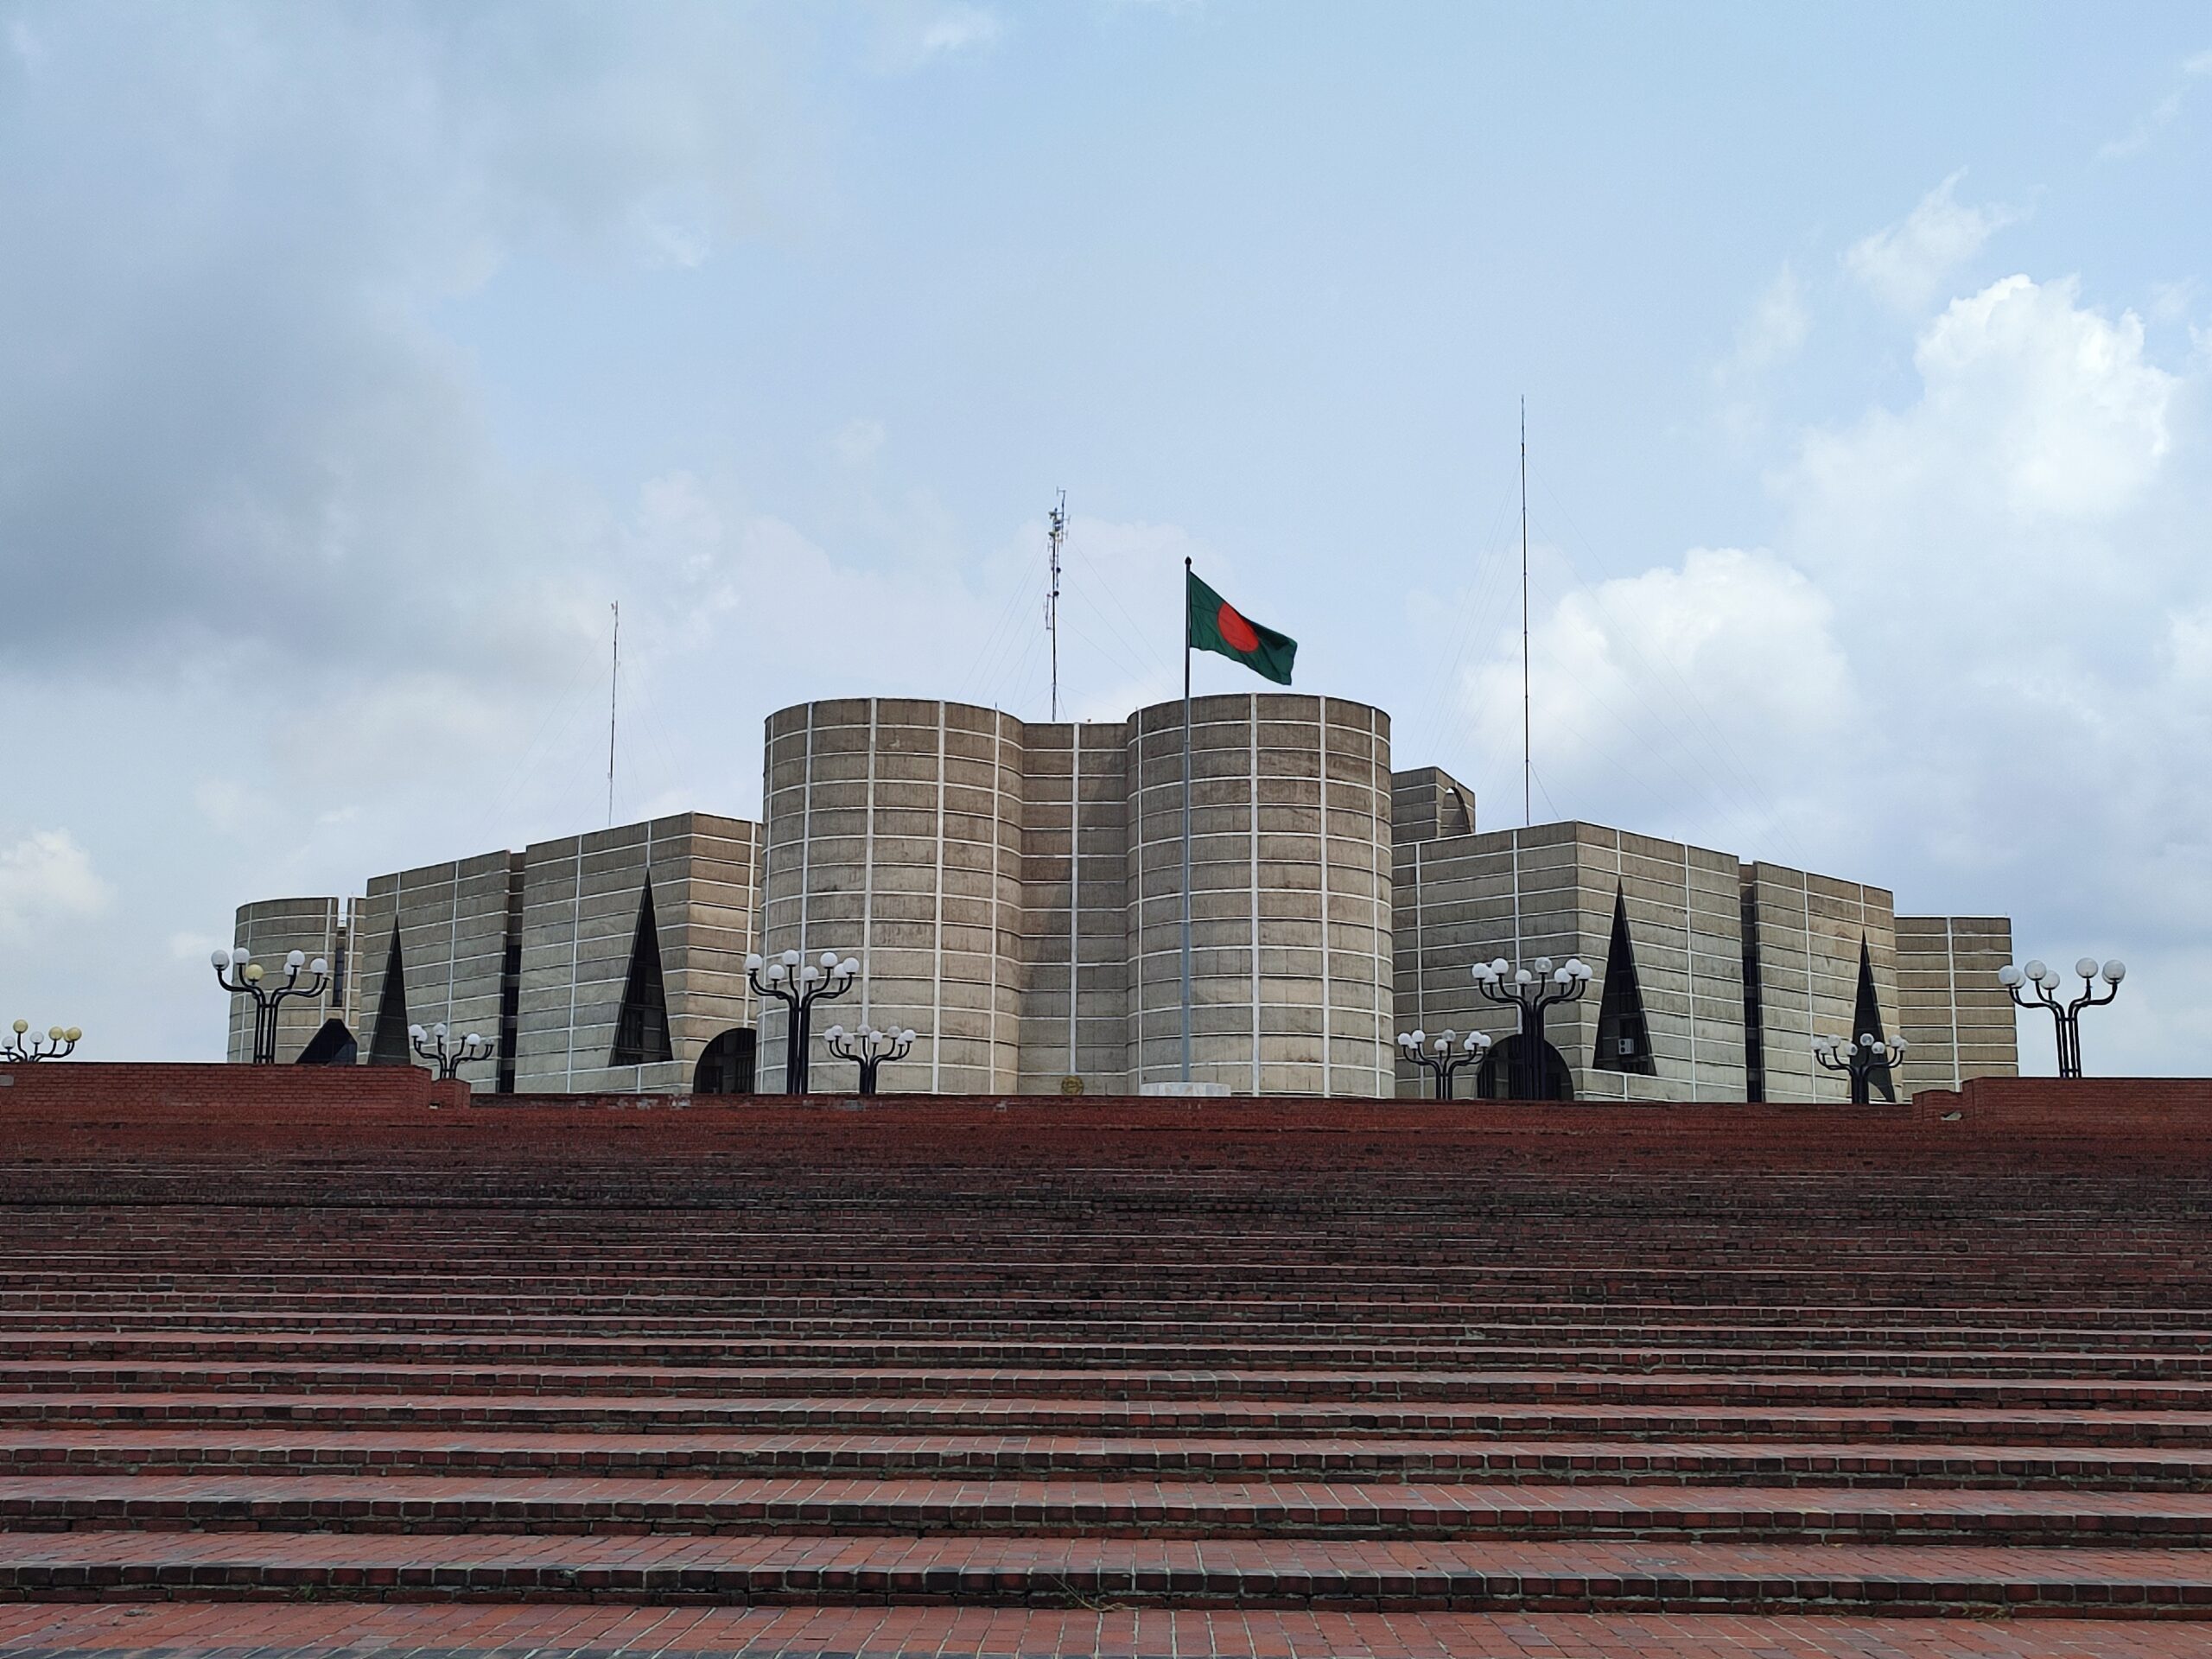 「ルイス・カーンの傑作、バングラを代表する建築デシュ♪」バングラデシュ国会議事堂＠ダッカ市